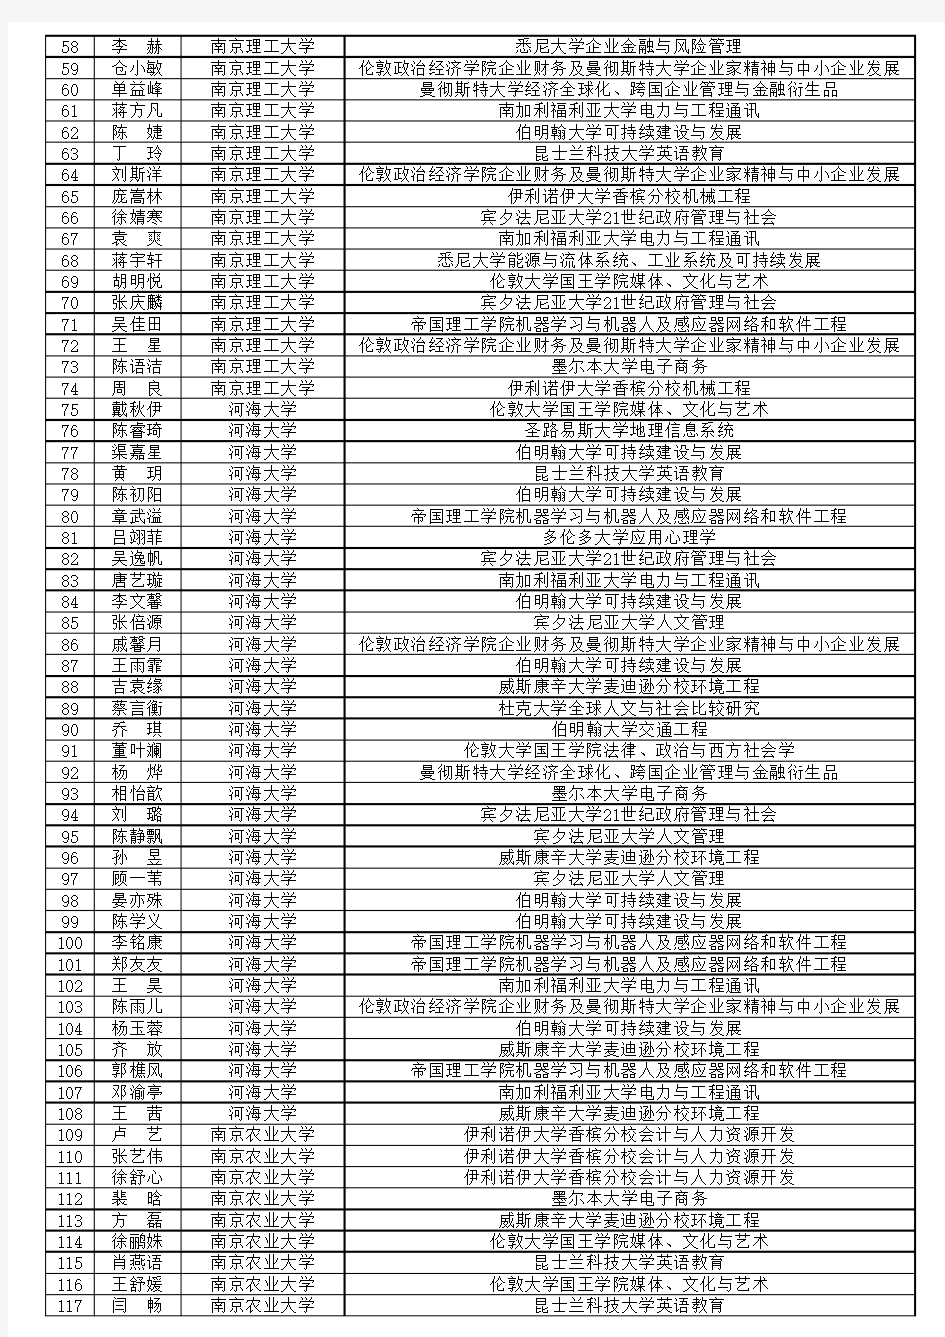 2015江苏高校学生境外学习政府奖学金项目部分资助学生录取名单汇编